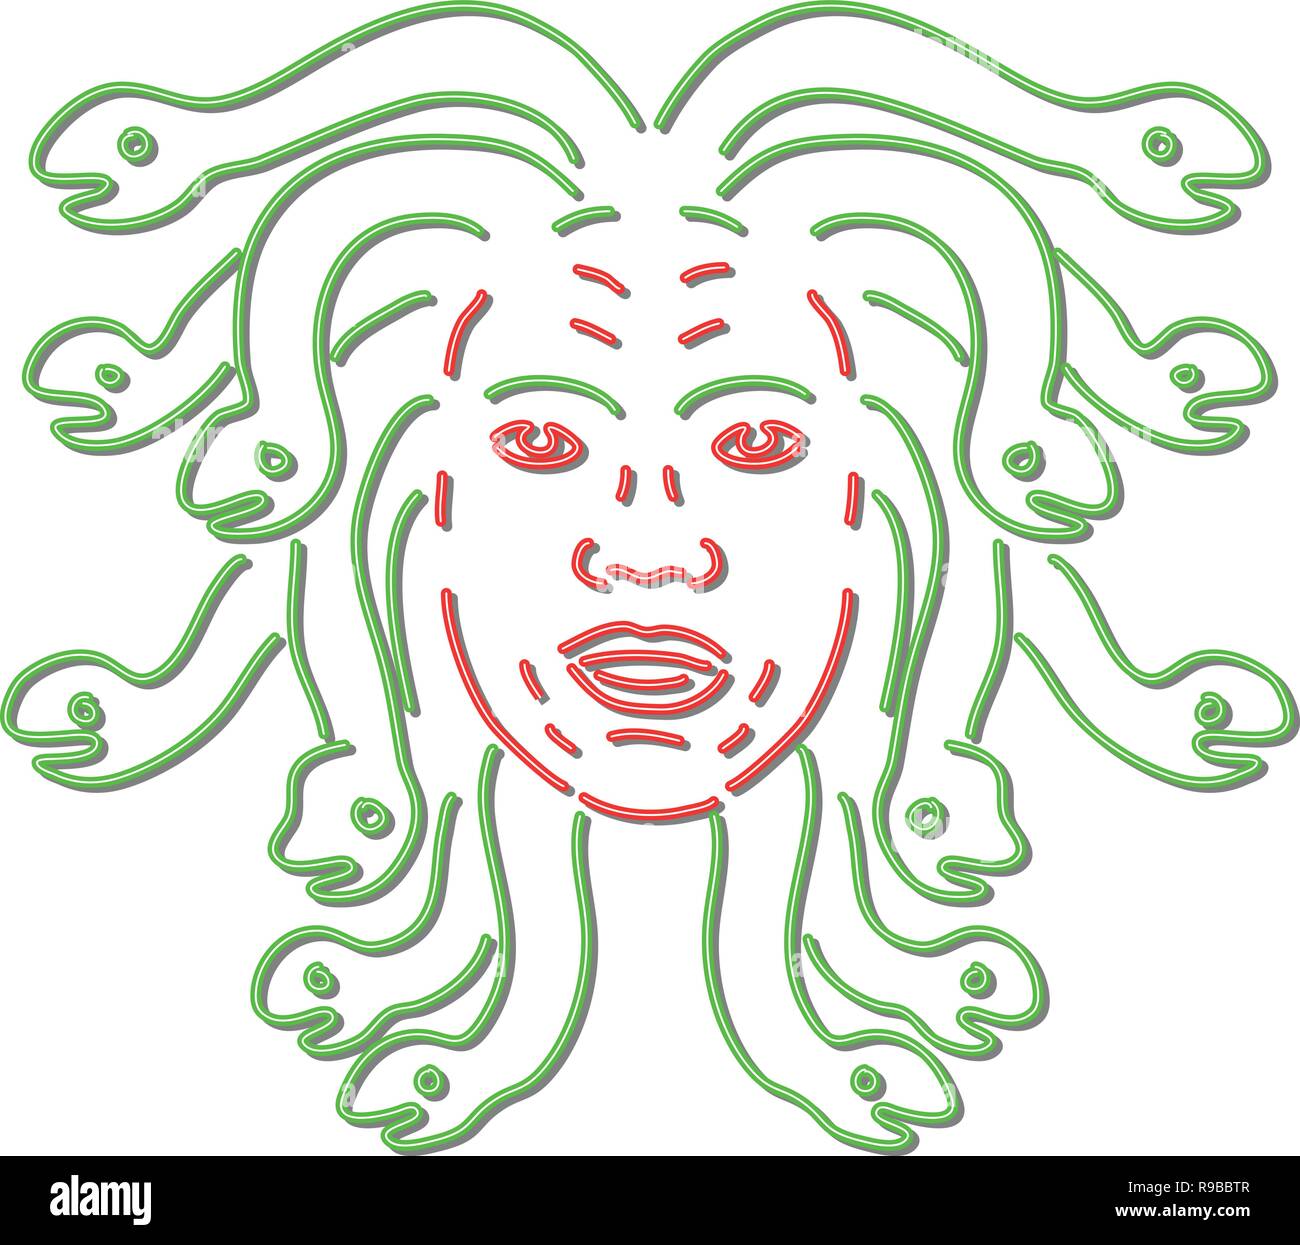 Retro Style Abbildung: Ein 90er Jahre Neon Sign light signage Beleuchtung der Kopf der Medusa in der Griechischen Mythologie, Gorgon Monster, giftige Schlangen Stock Vektor